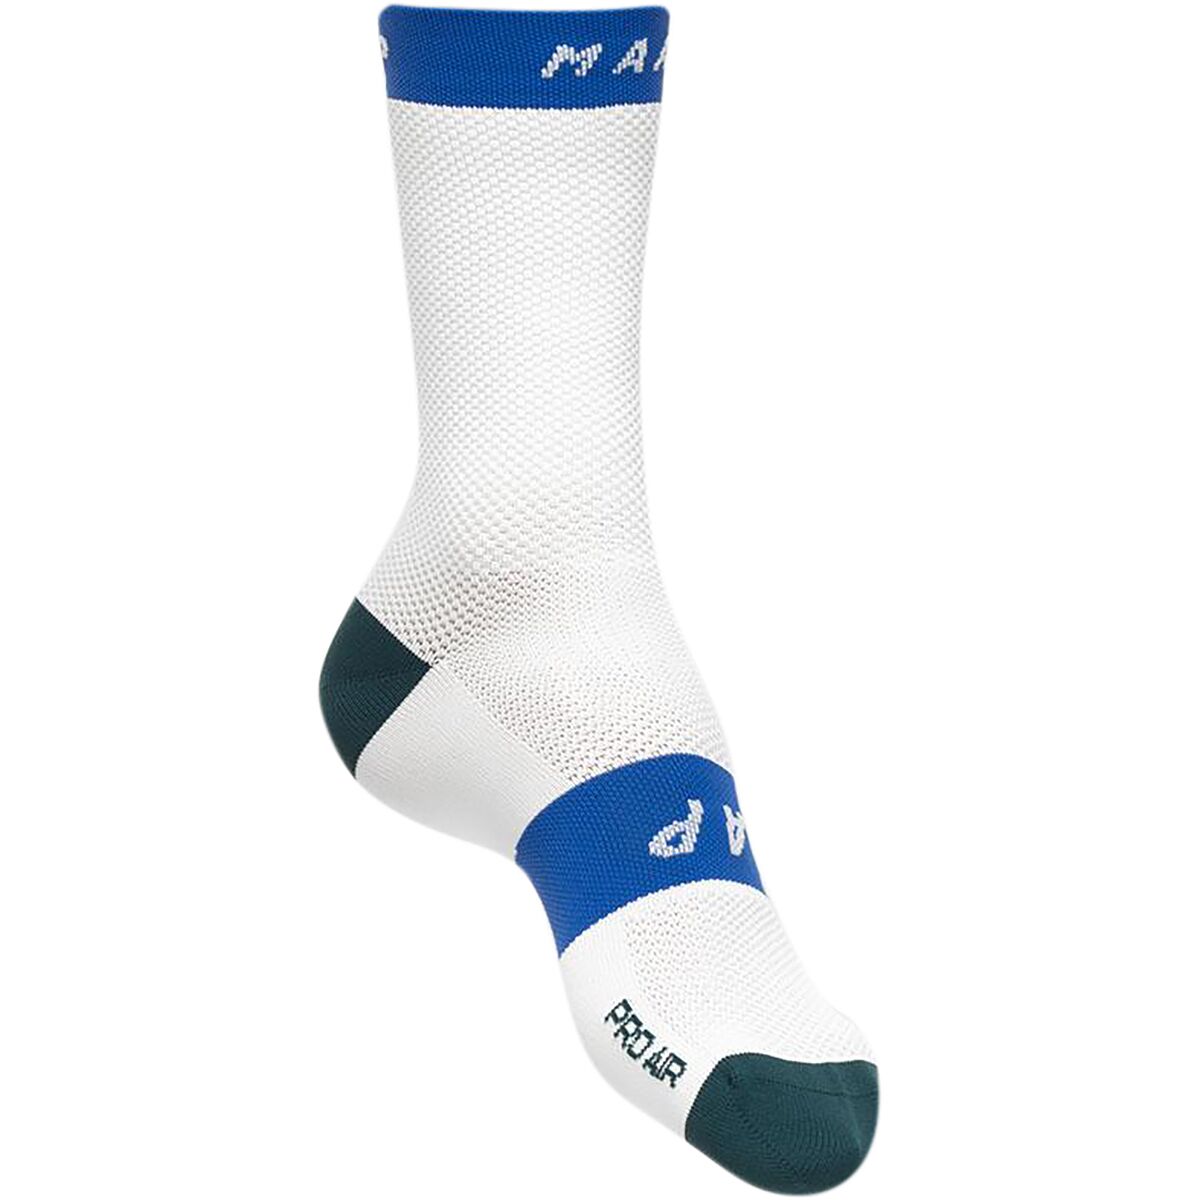 MAAP Pro Air Sock | eBay